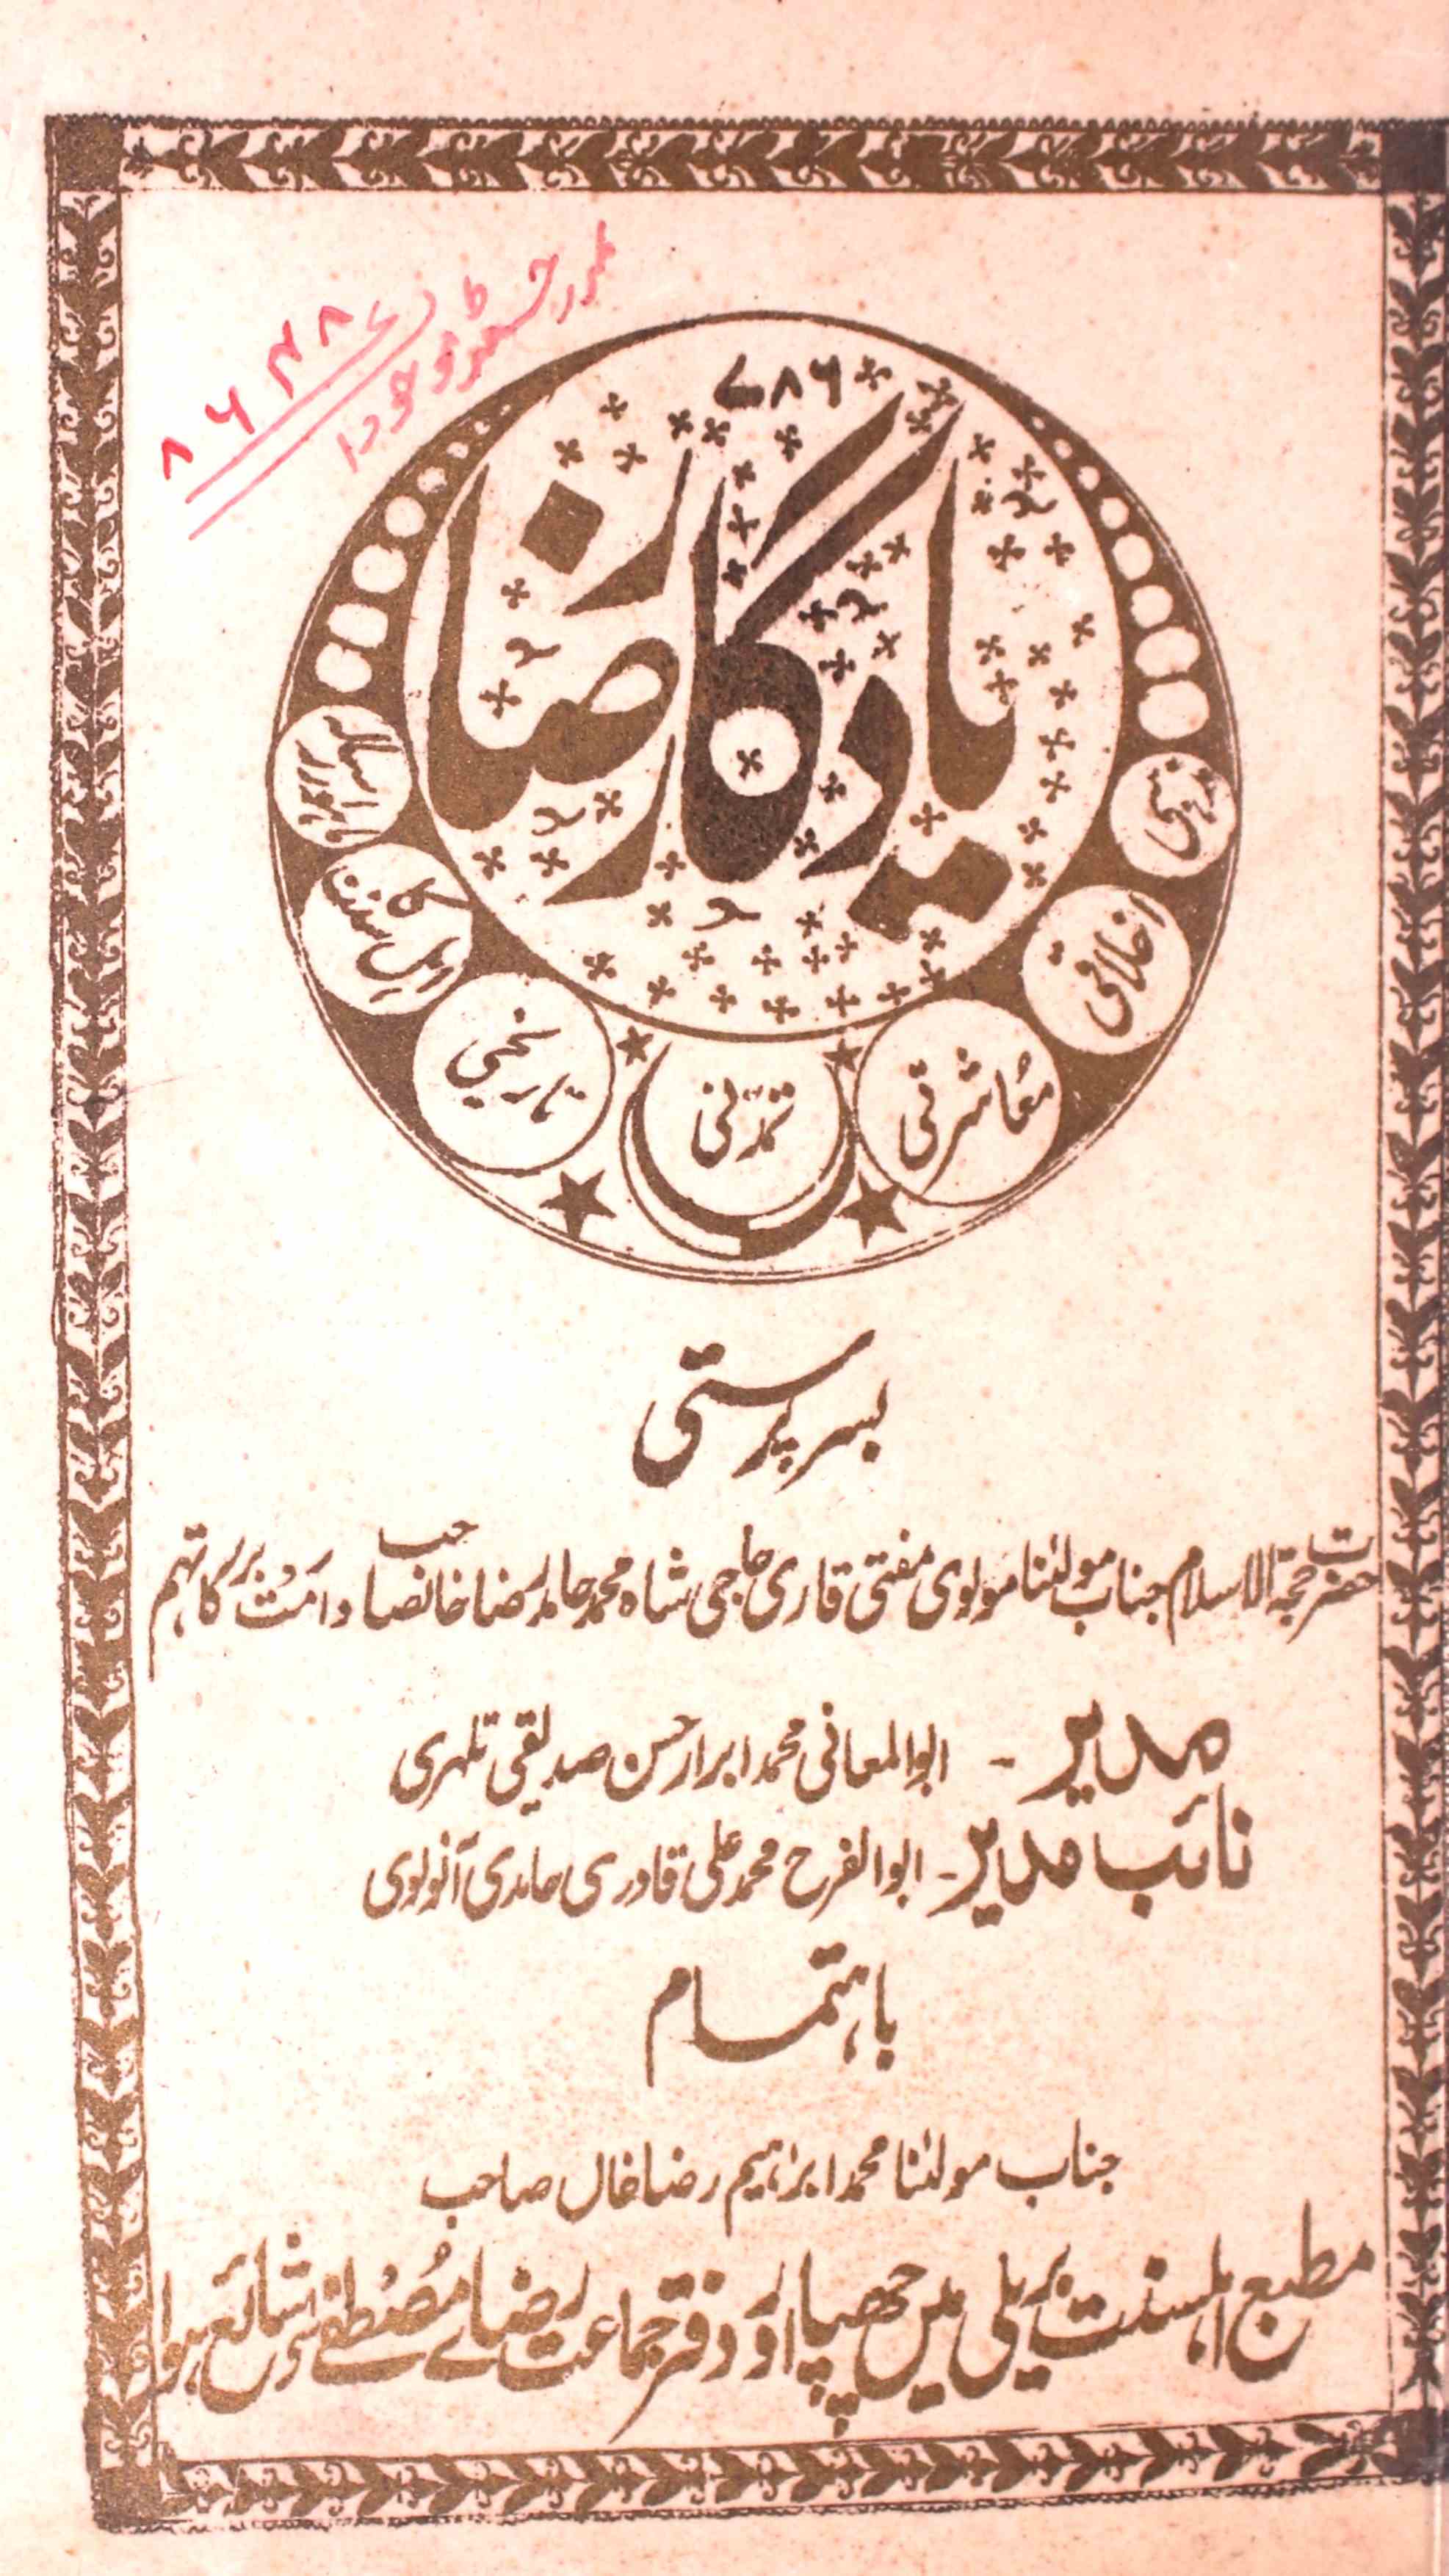 Yadgar e Raza Jild 1 No. 6 Shaban 1345 Hijri